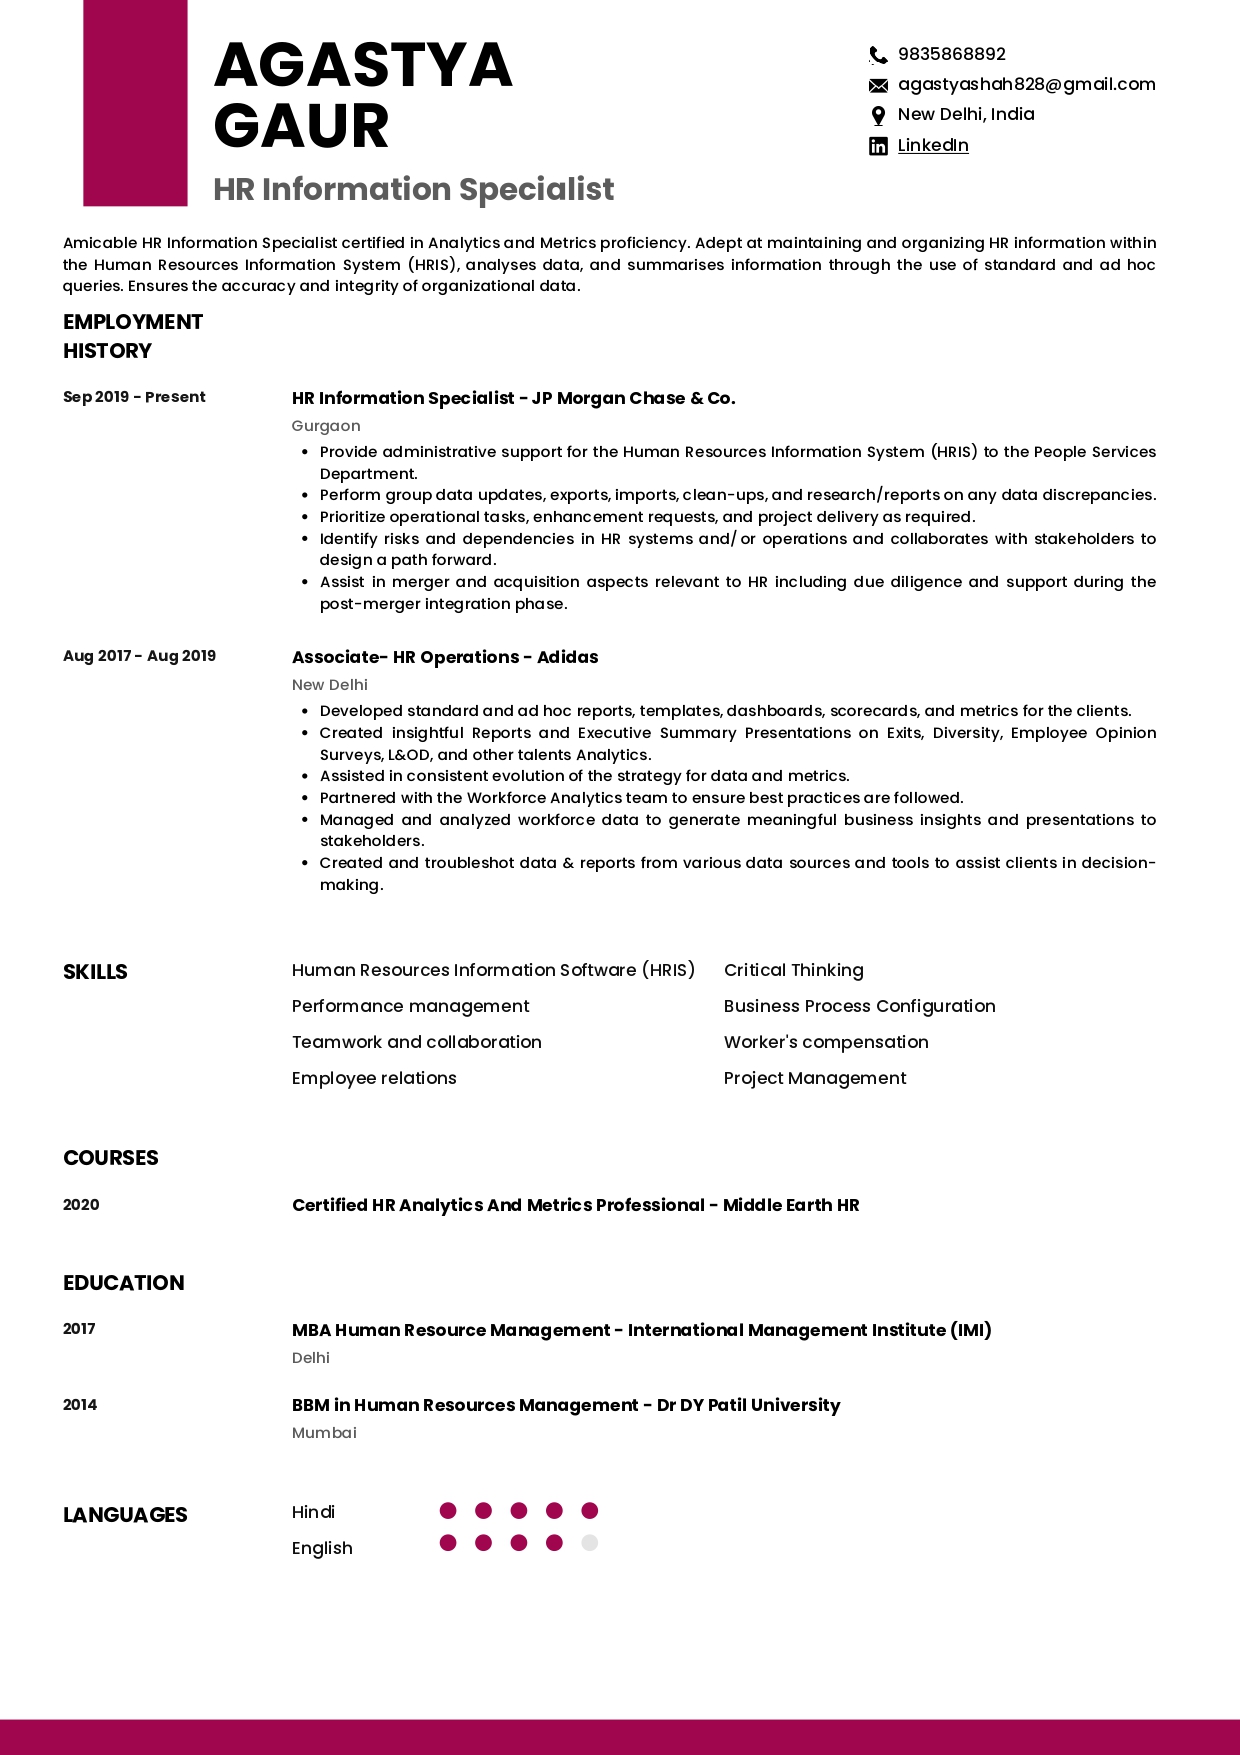 Resume of HR Information Specialist